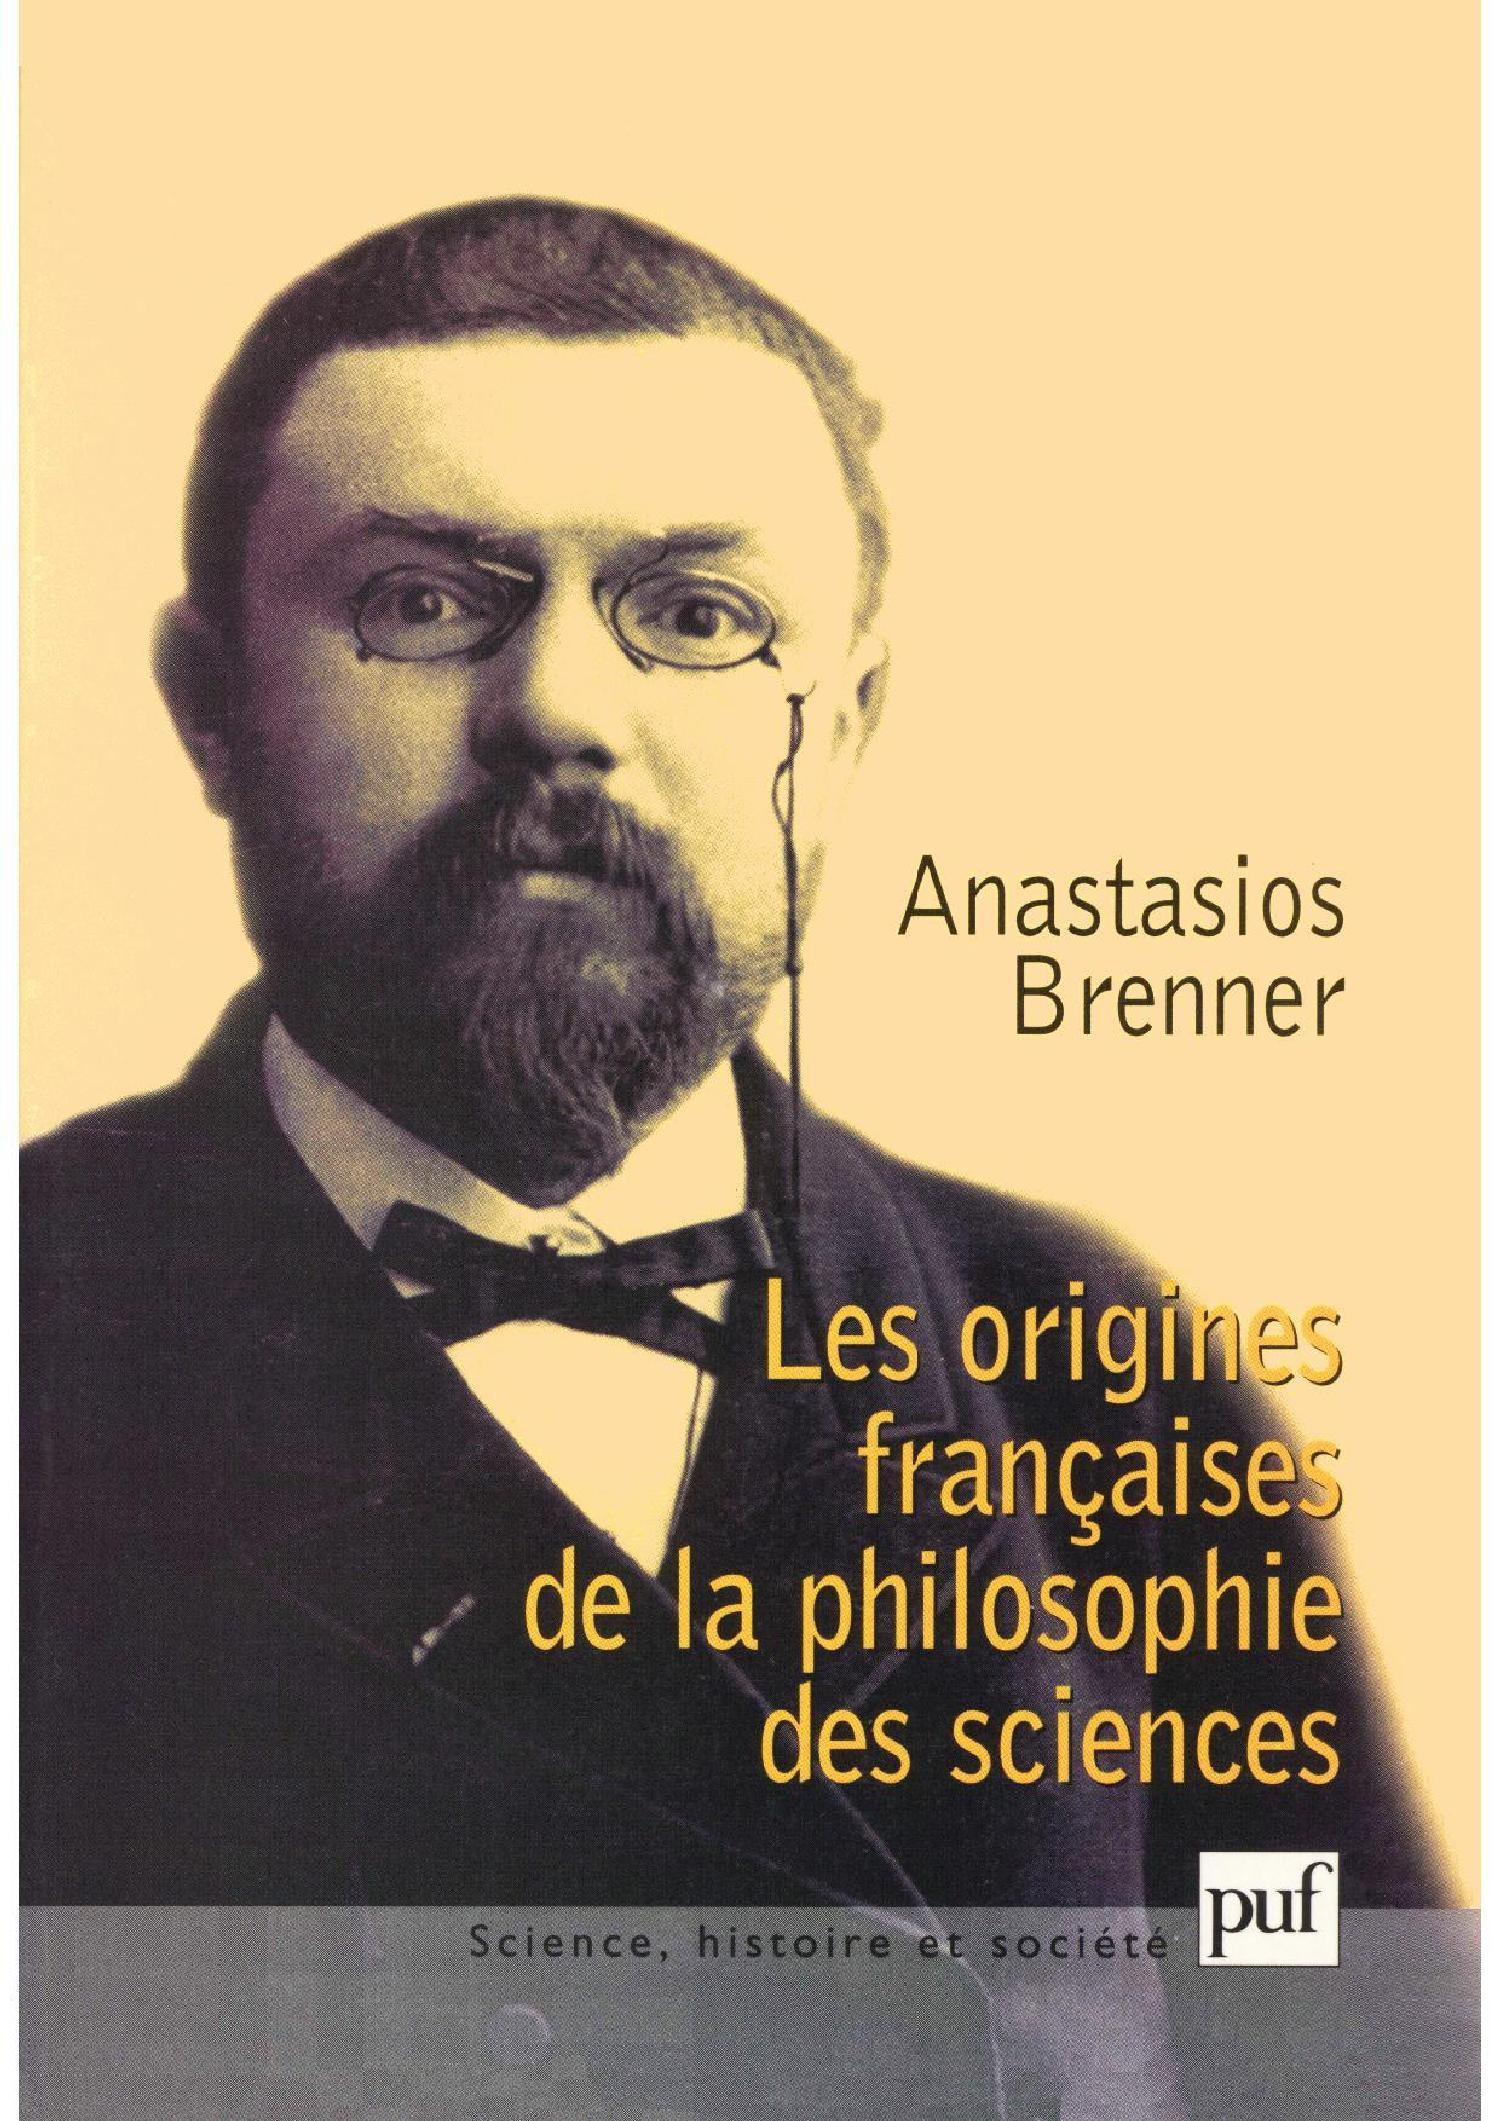 Les origines françaises de la philosophie des sciences De Anastasios Brenner - Presses Universitaires de France